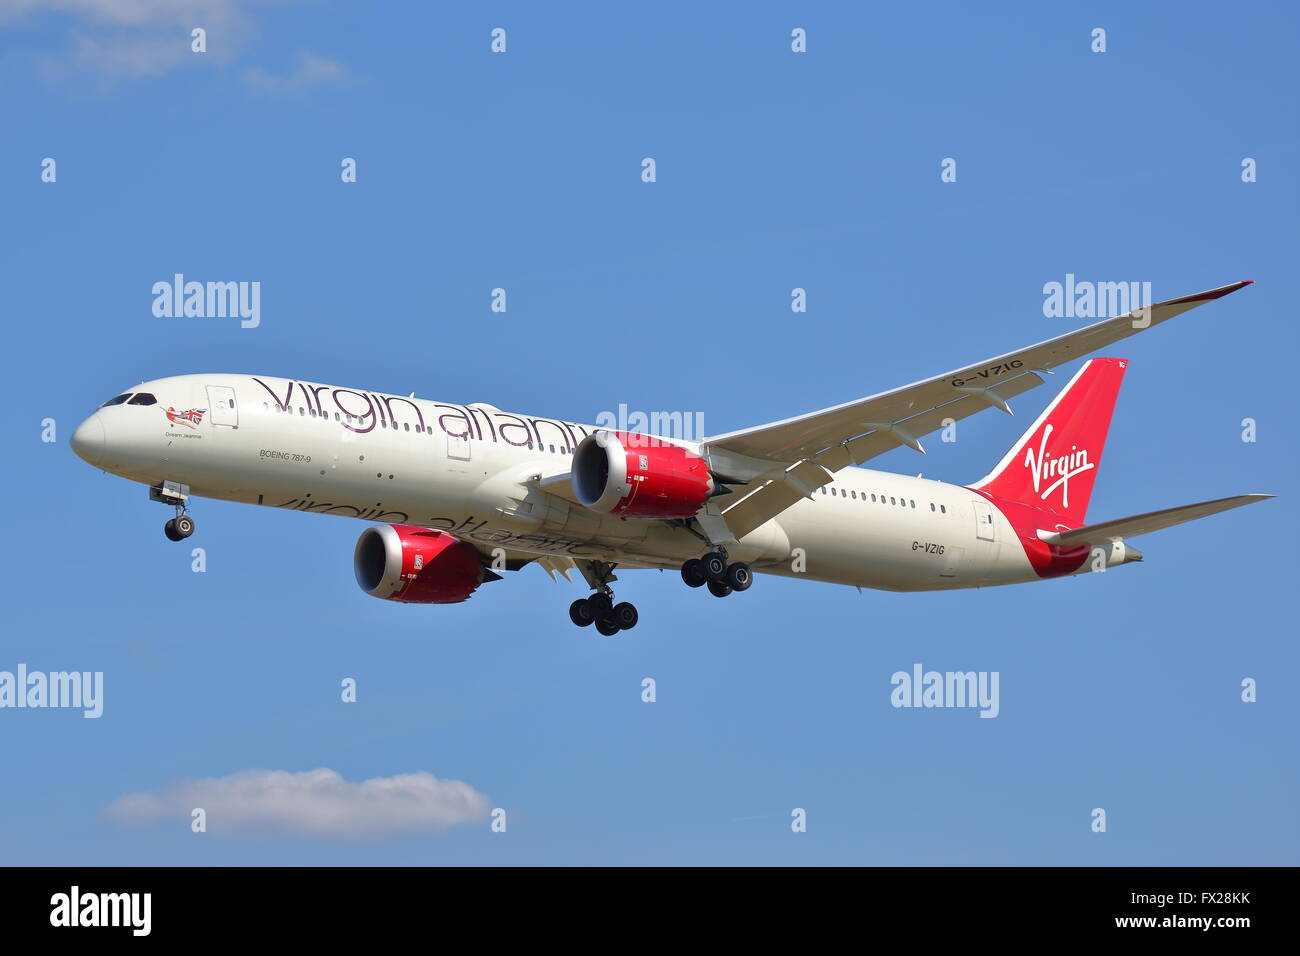 Virgin Atlantic Boeing 787-9 Dreamliner VZIG G-arrivant à l'aéroport Heathrow de Londres, UK Banque D'Images